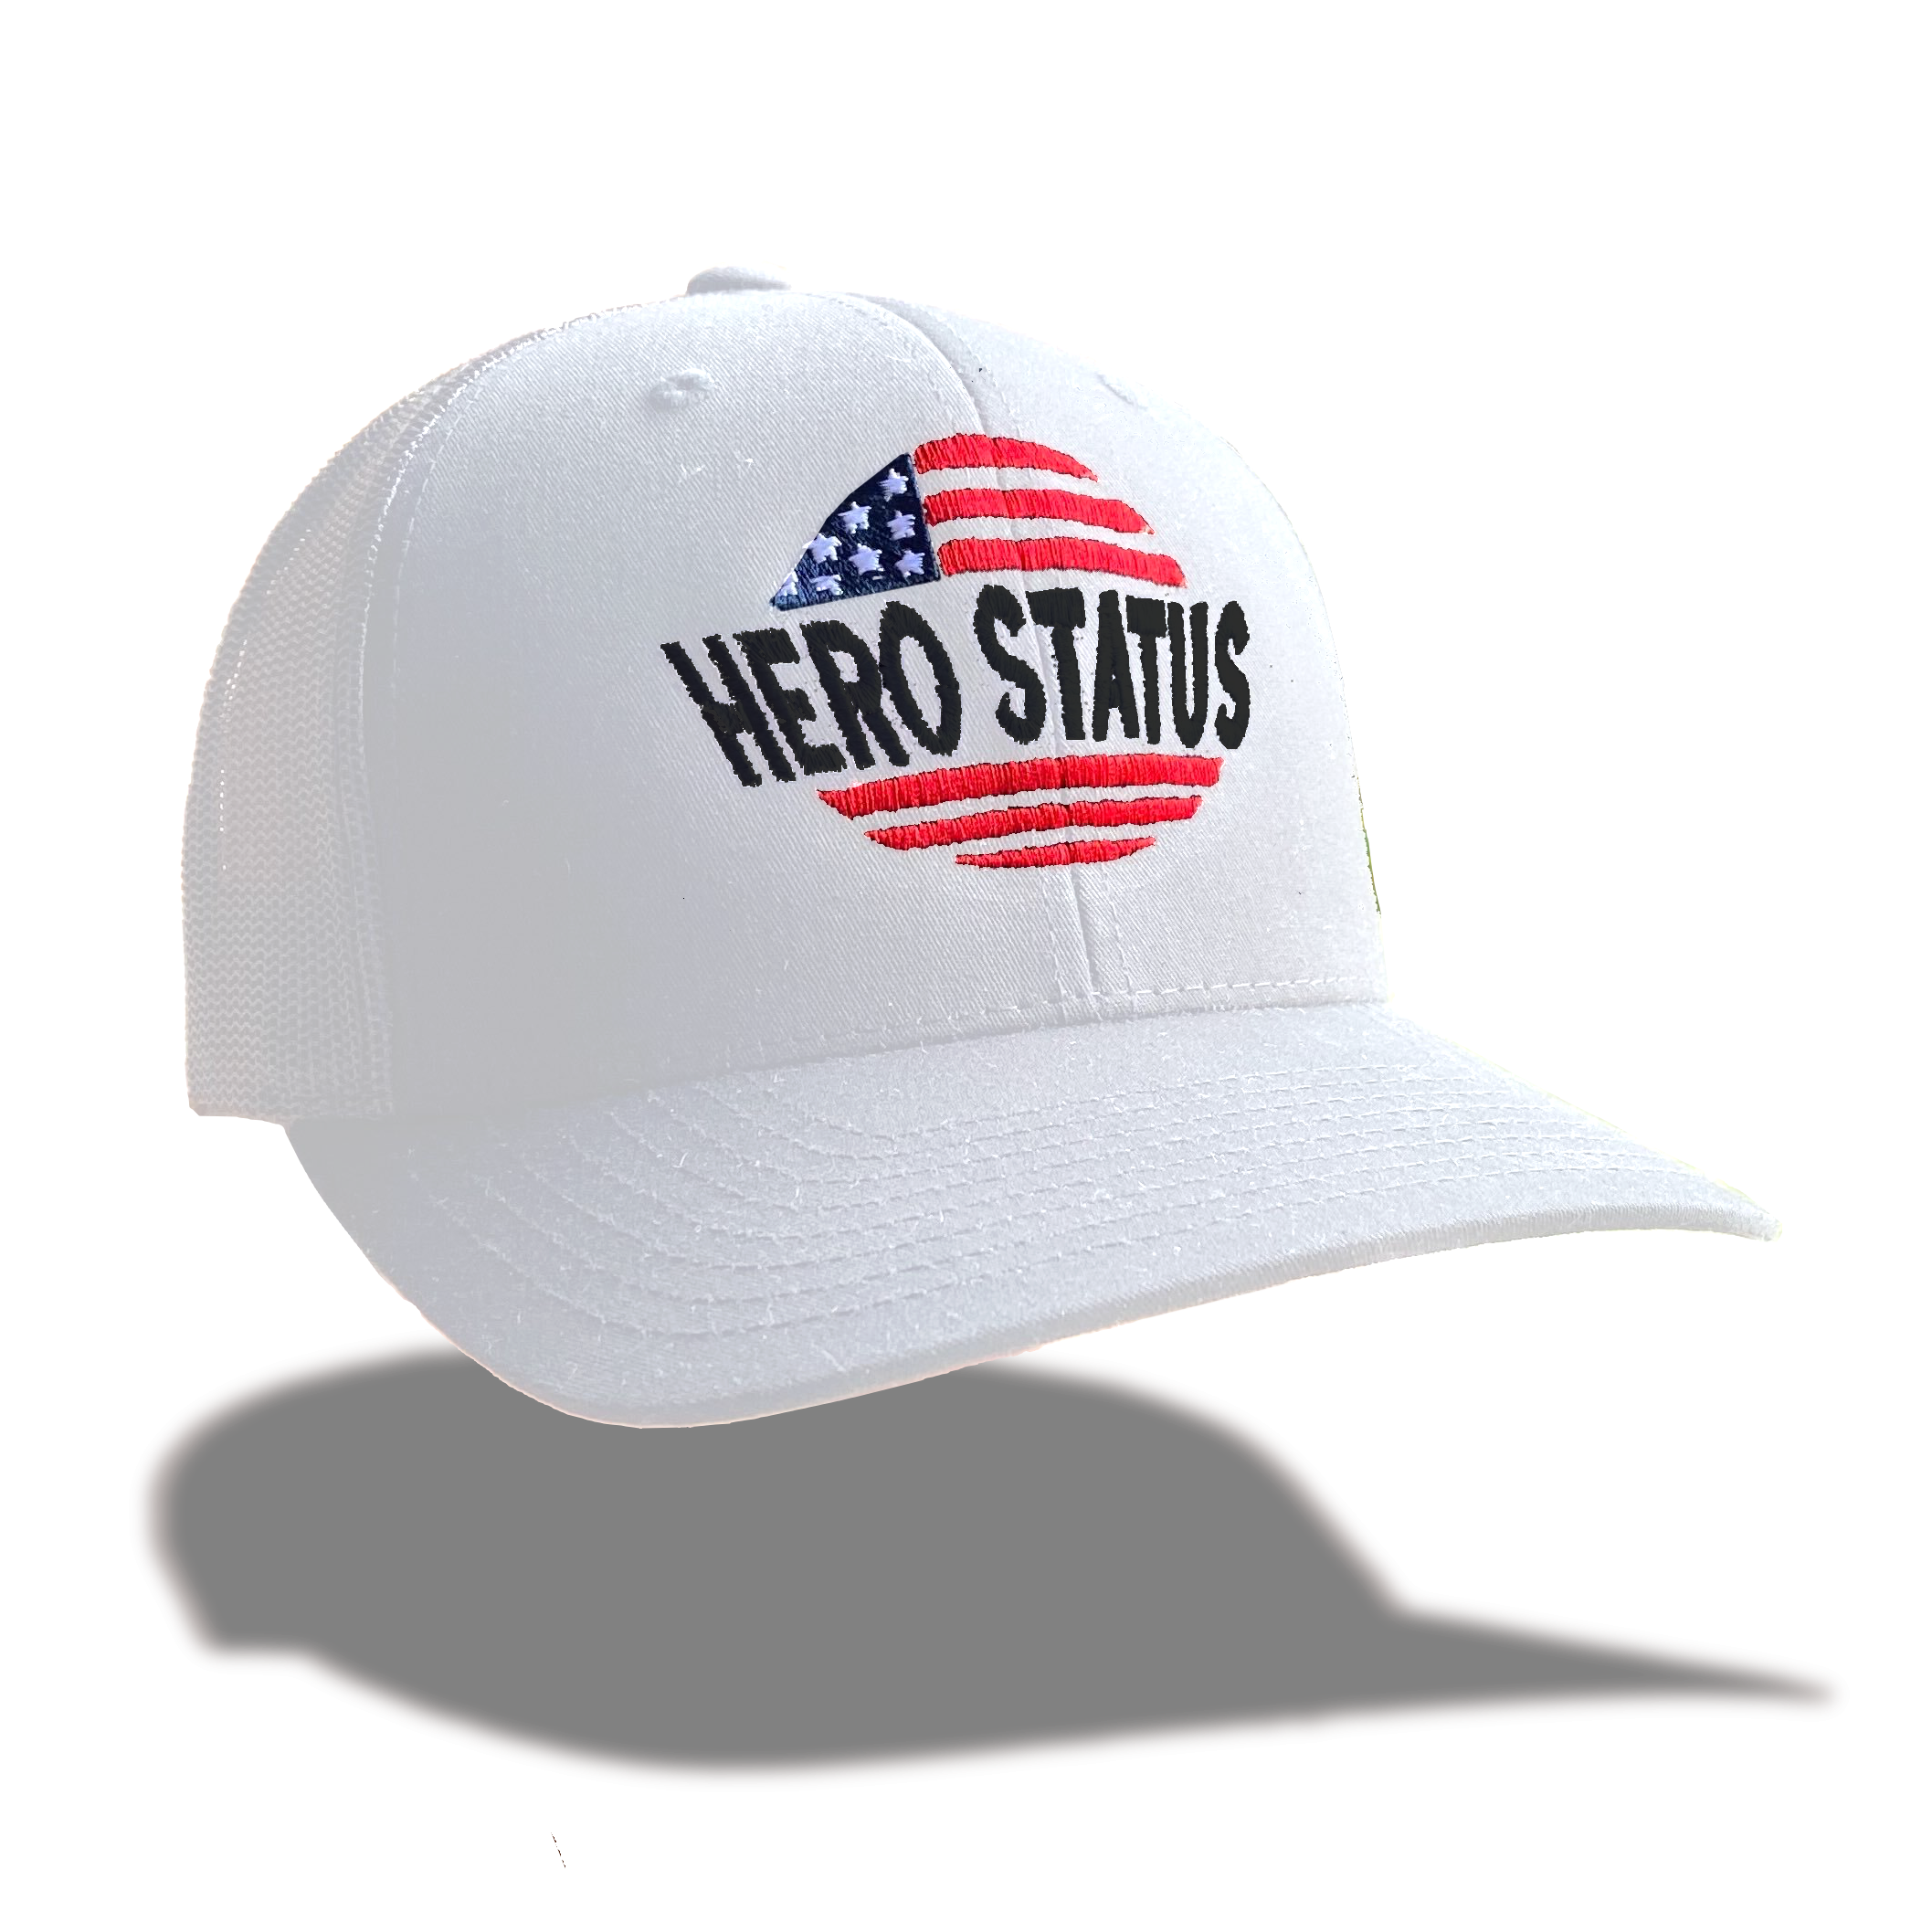 Hero Status Retro Trucker Hat